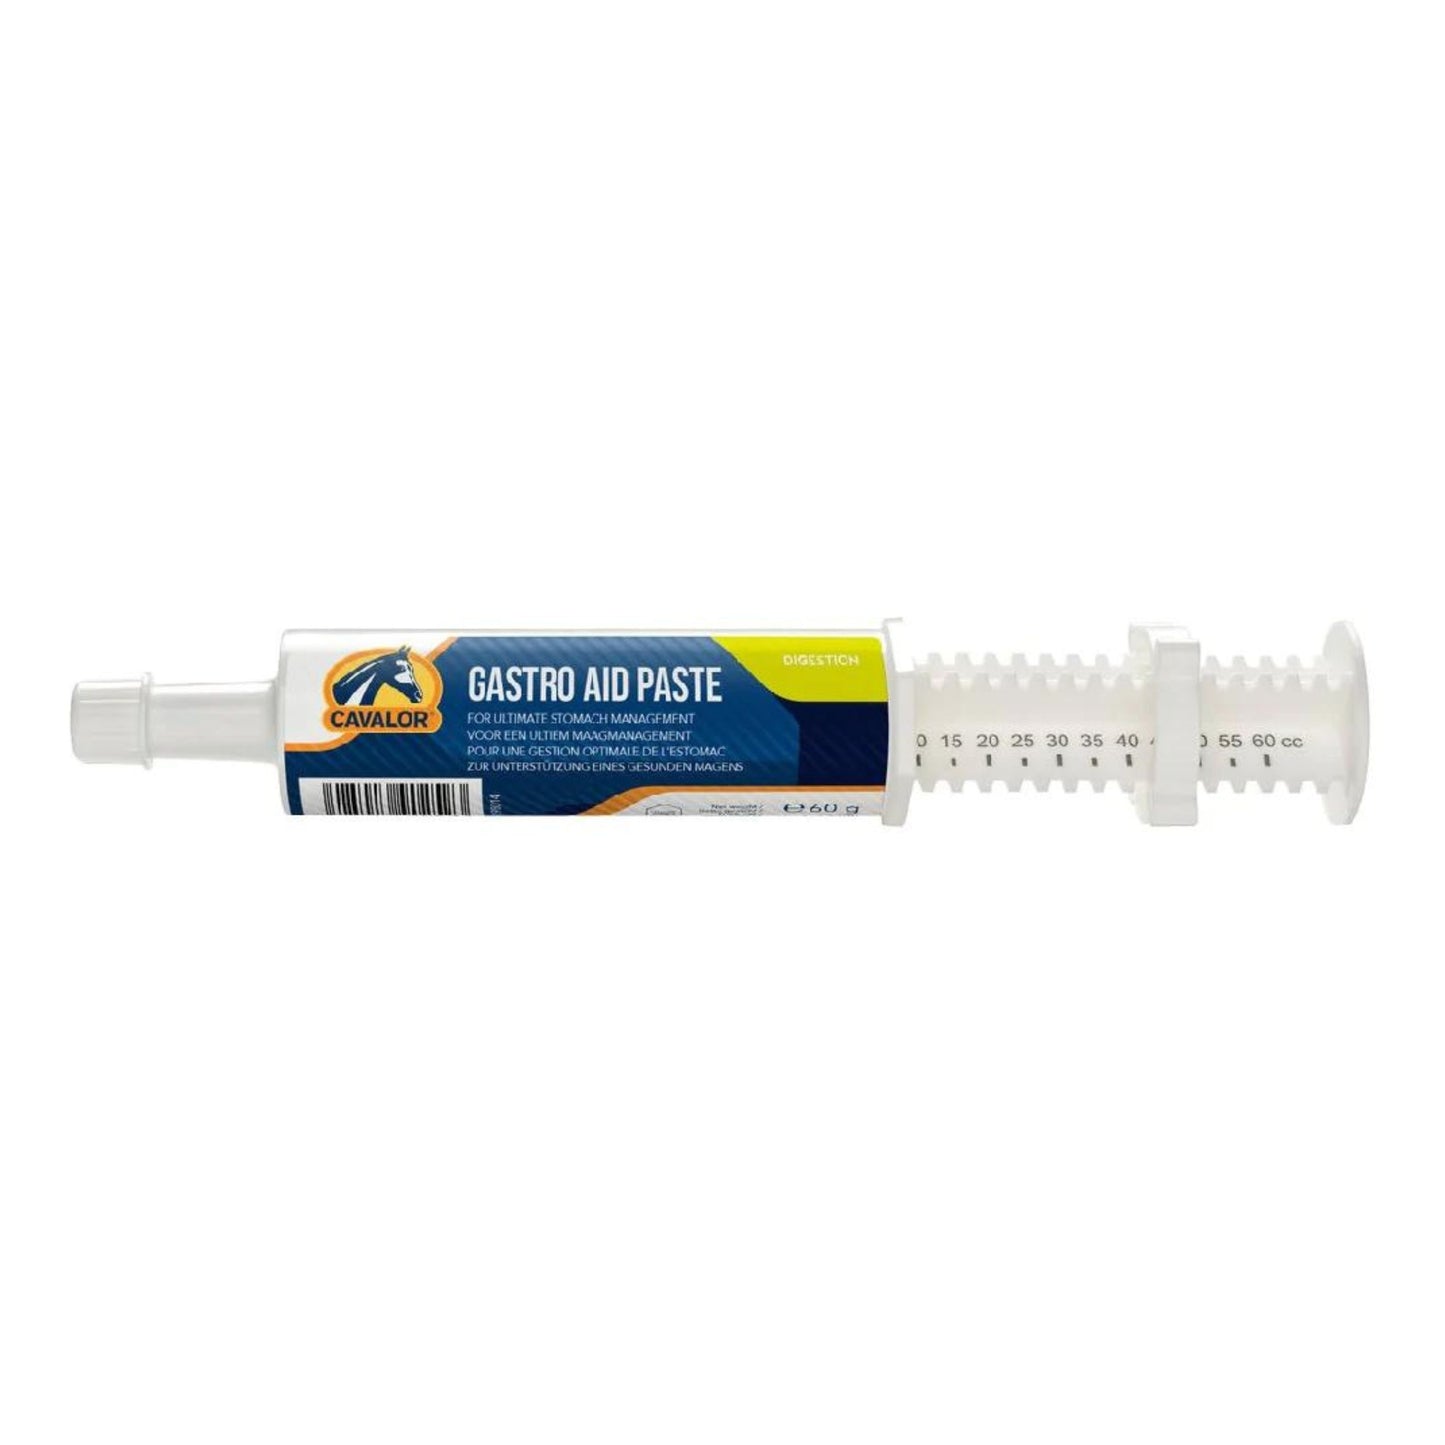 Cavalor Gastro Aid Paste Syringe